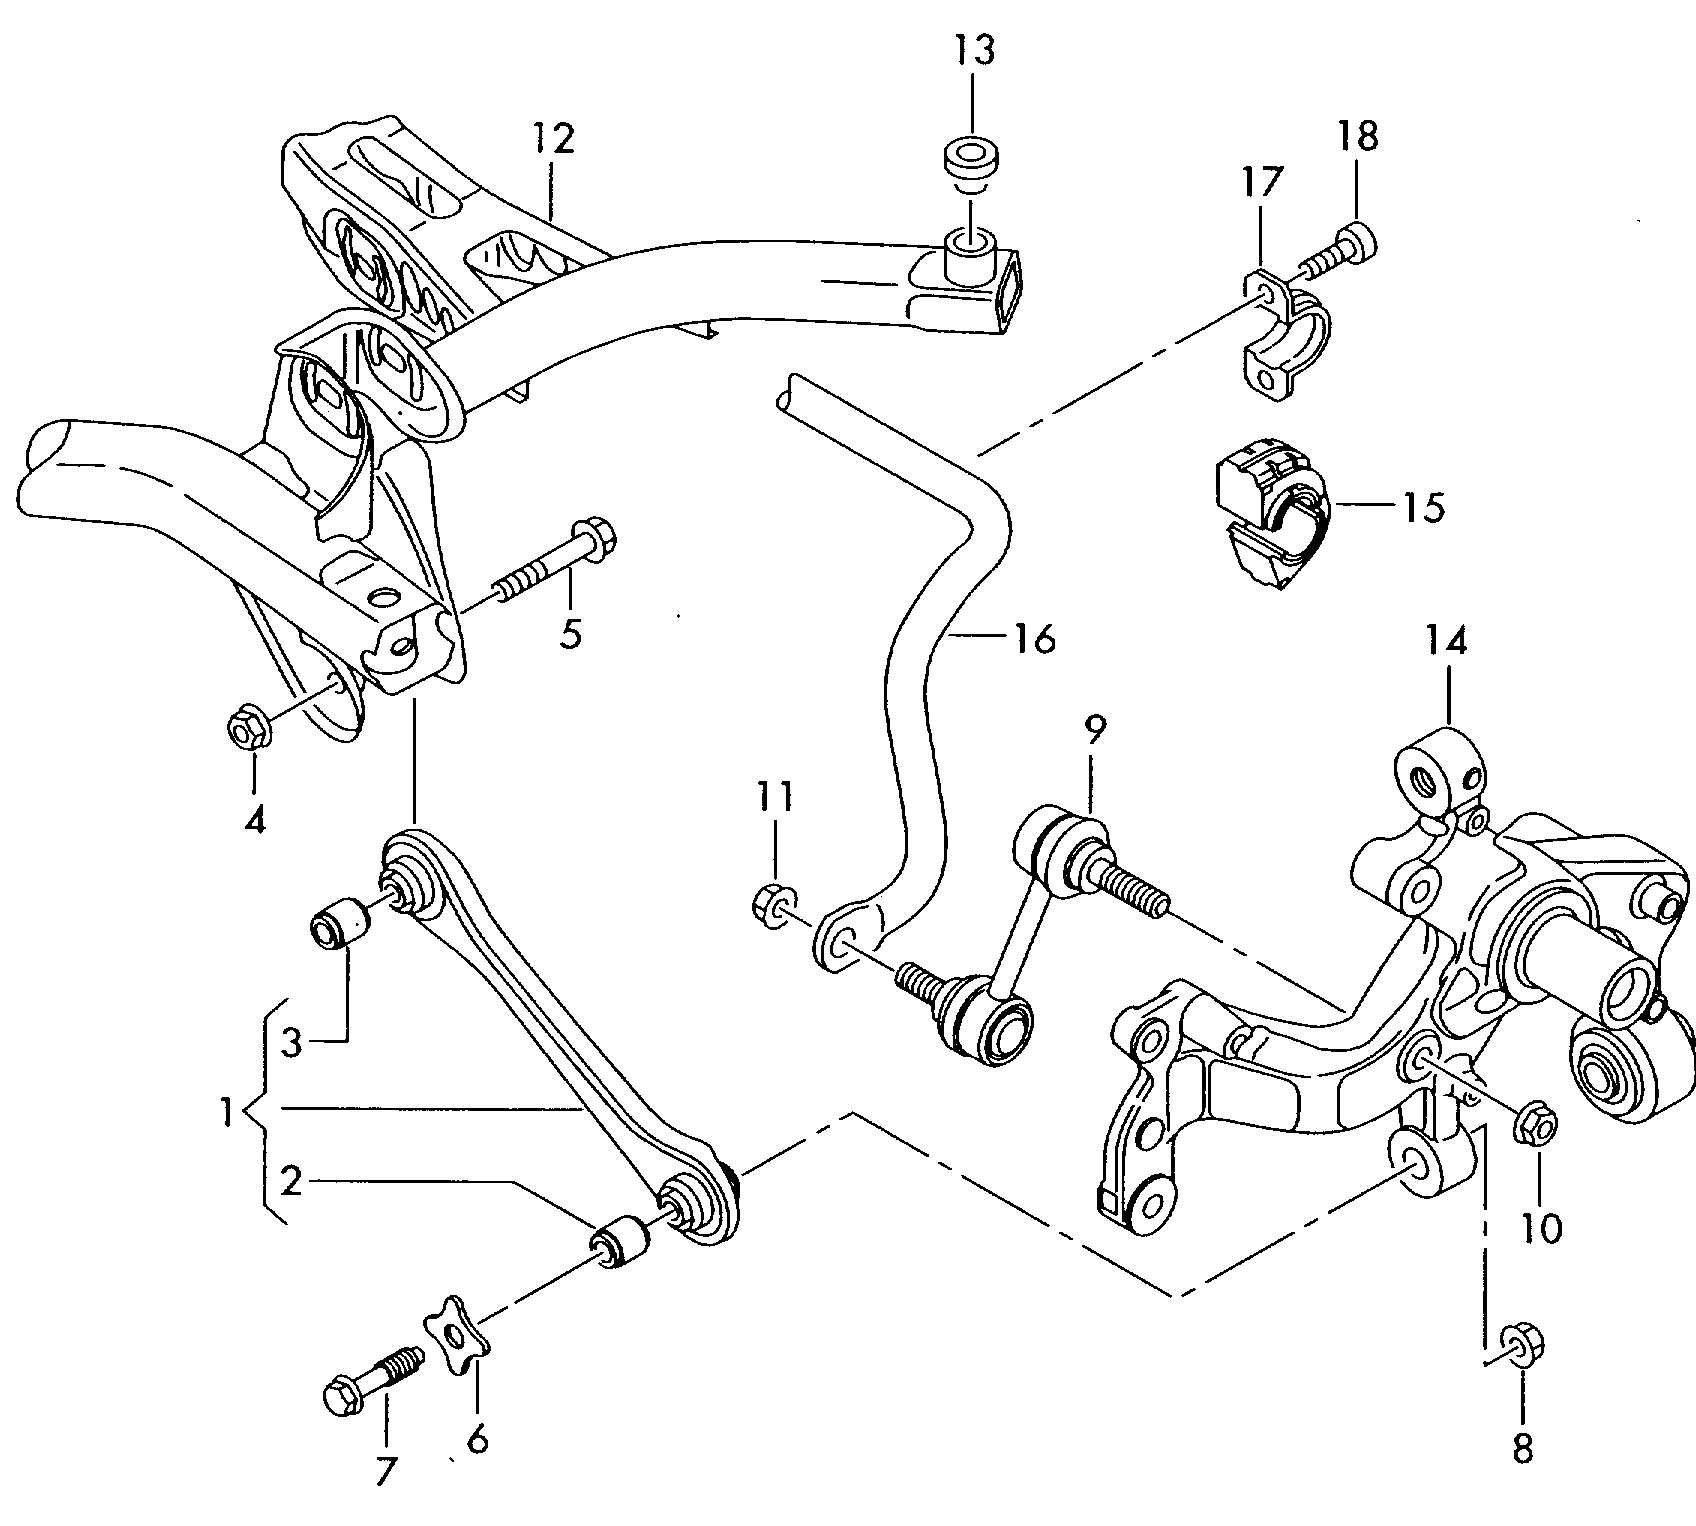 Rot çubuğu; Bağlantı çubuğu; Stabilizatör - Touran(TOU)  